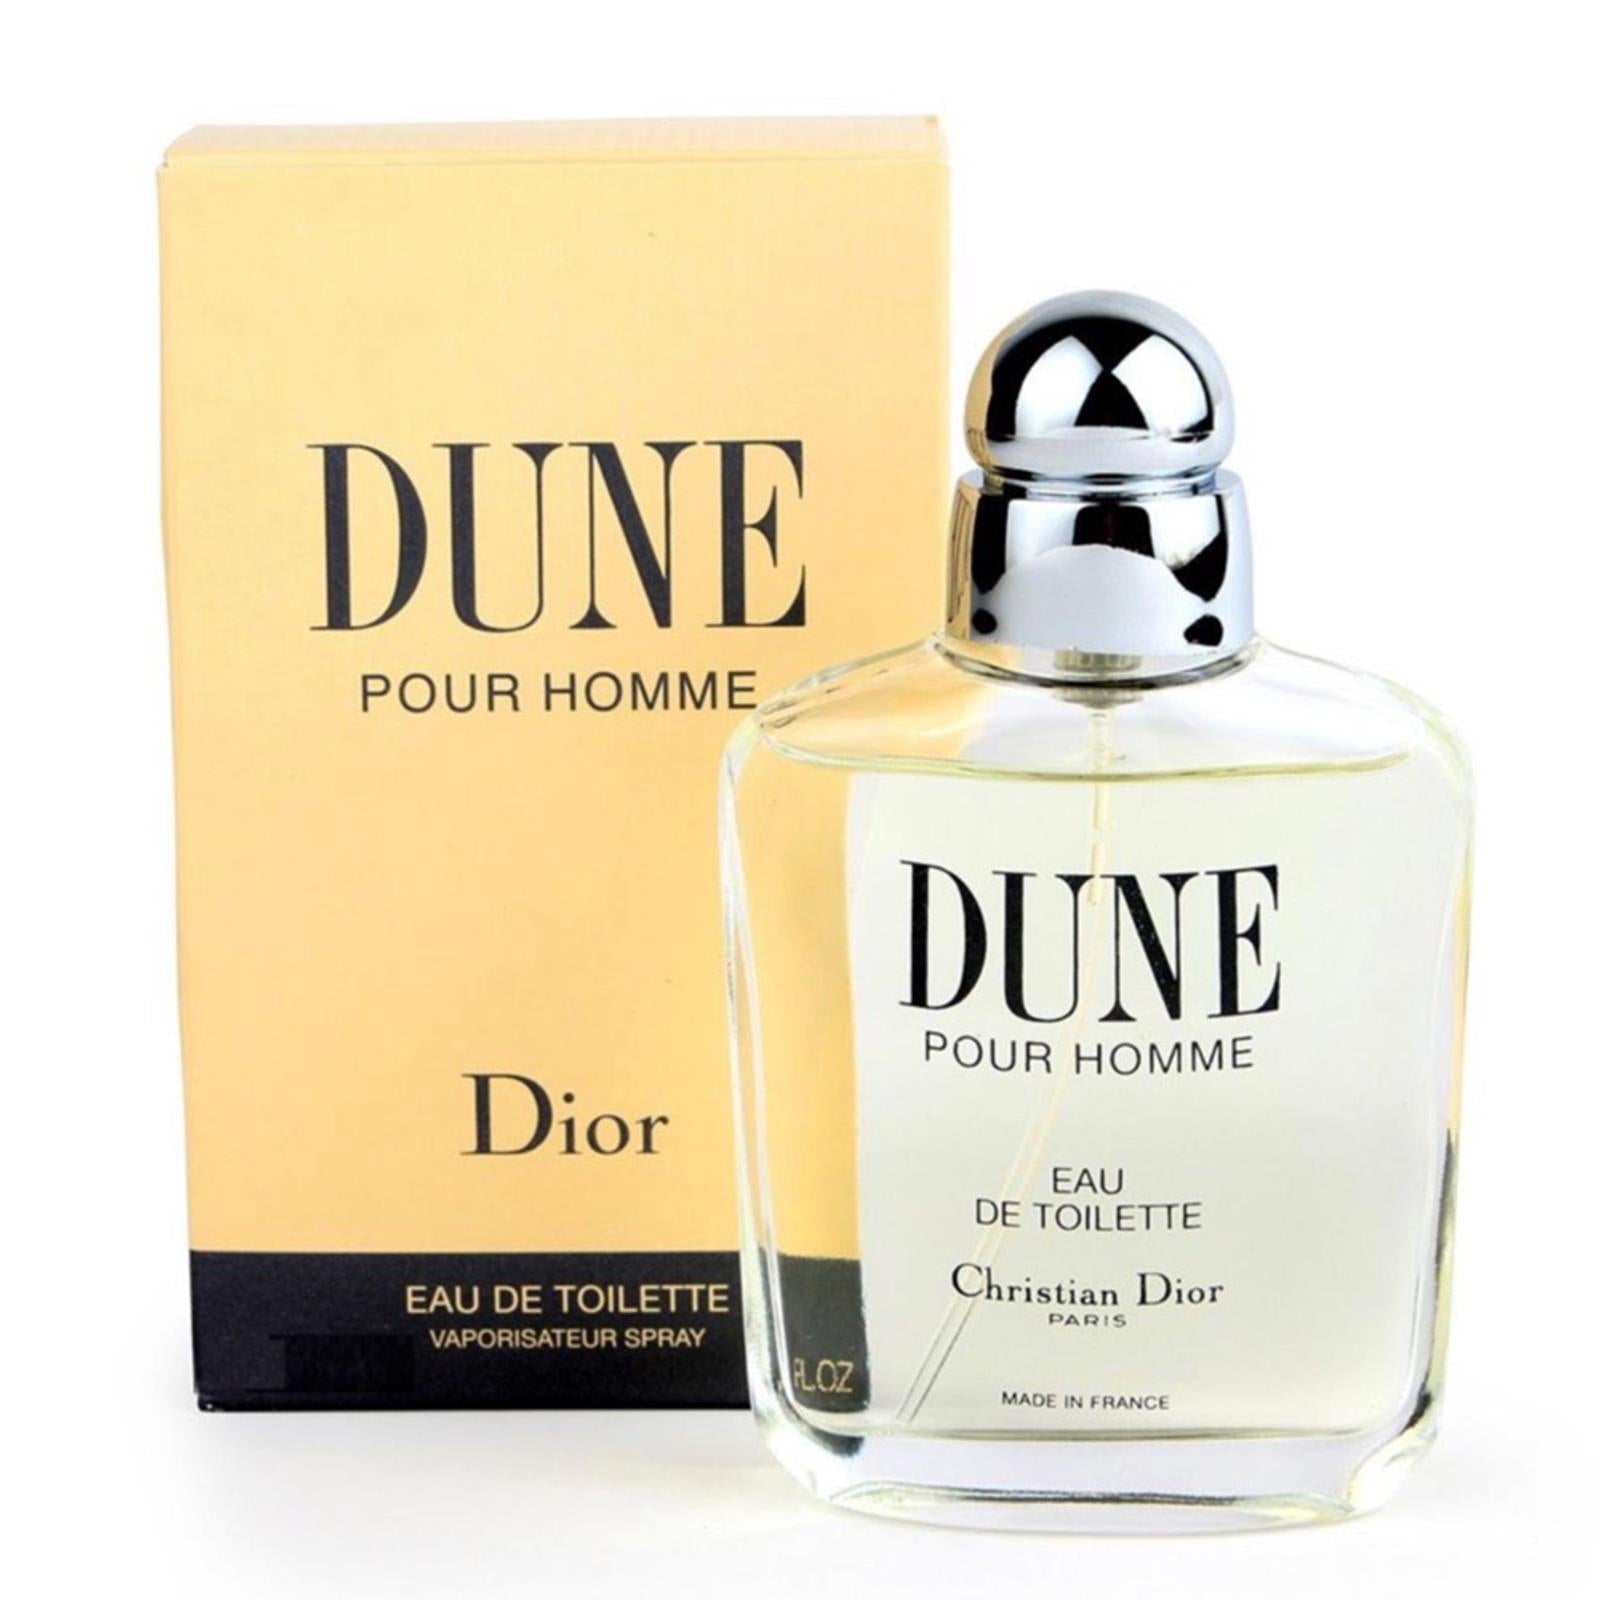 Ambassadeur Omgaan met maart Dune Pour Homme by Christian Dior | eBay